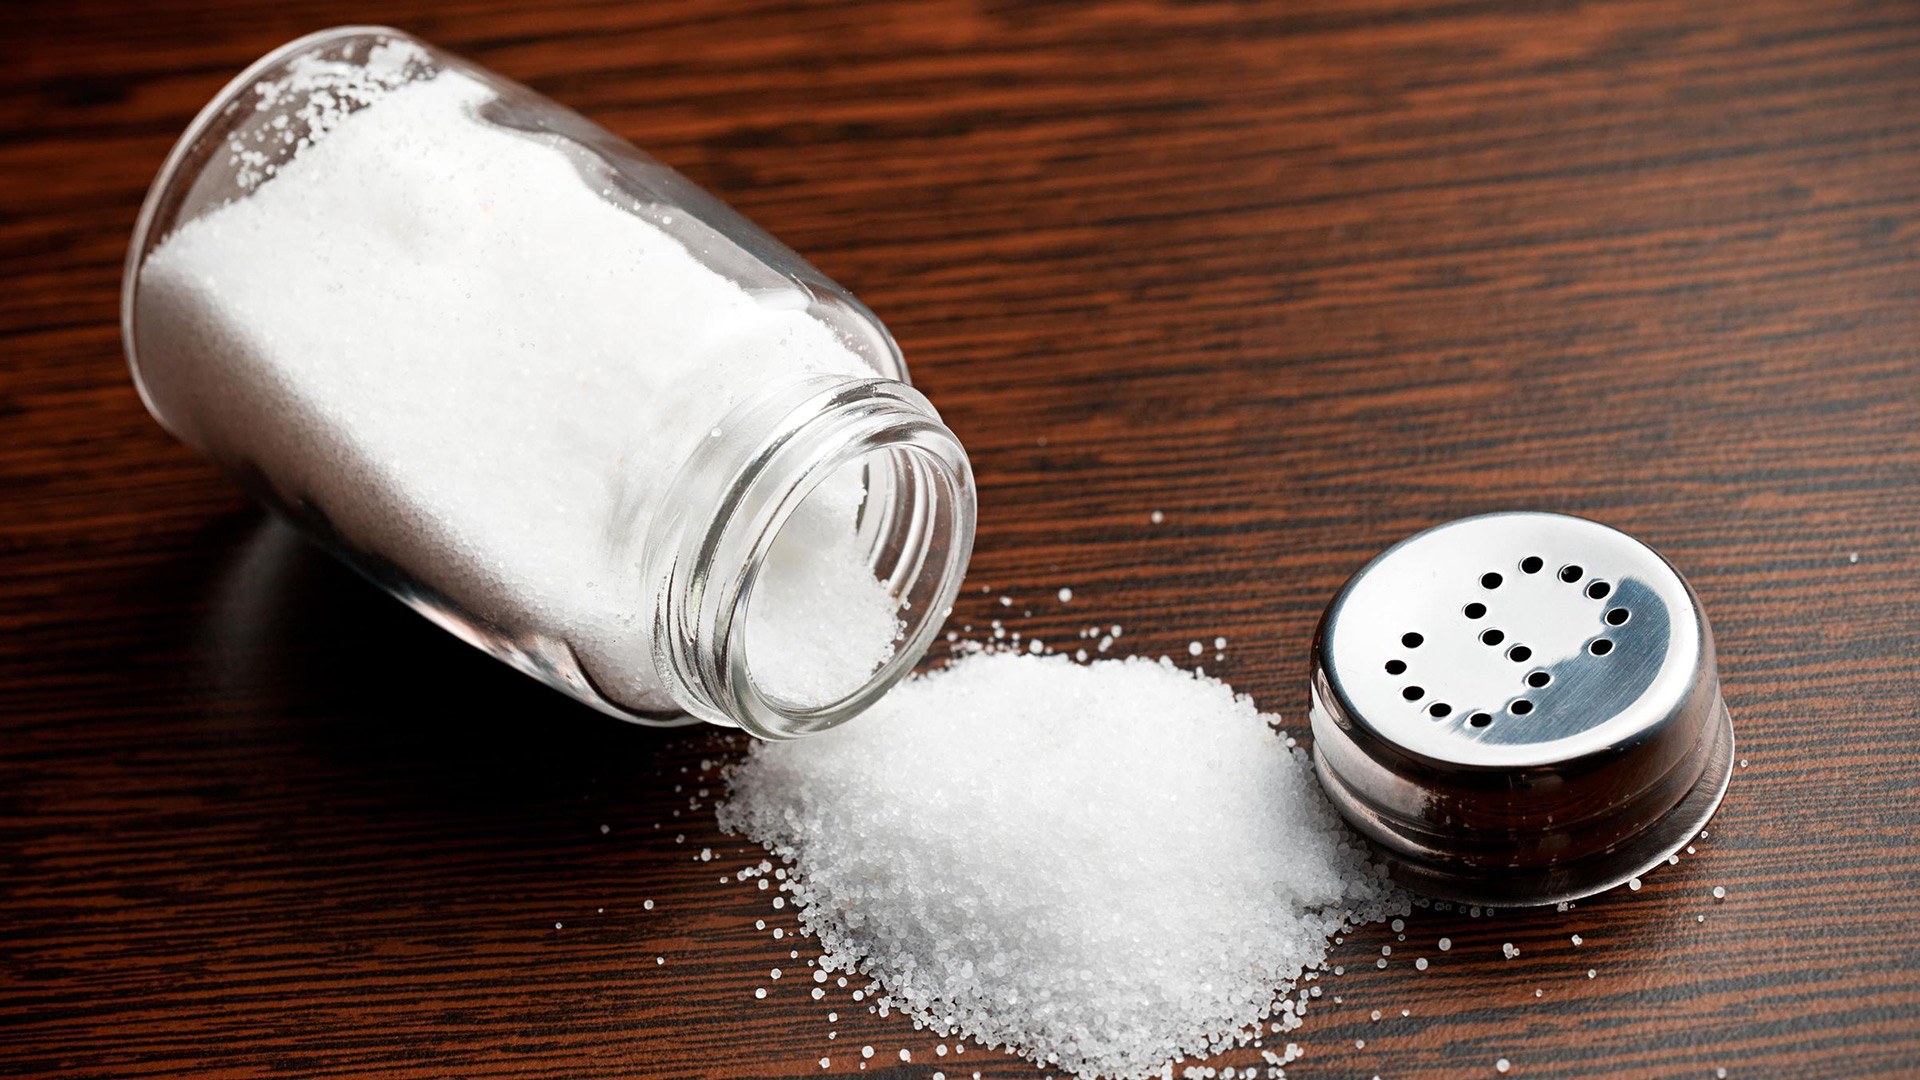 طبيب تغذية يحذر من أضرار الملح ويكشف عن 3 أمراض خطيرة تصيبك عند تناوله بتلك الطريقة